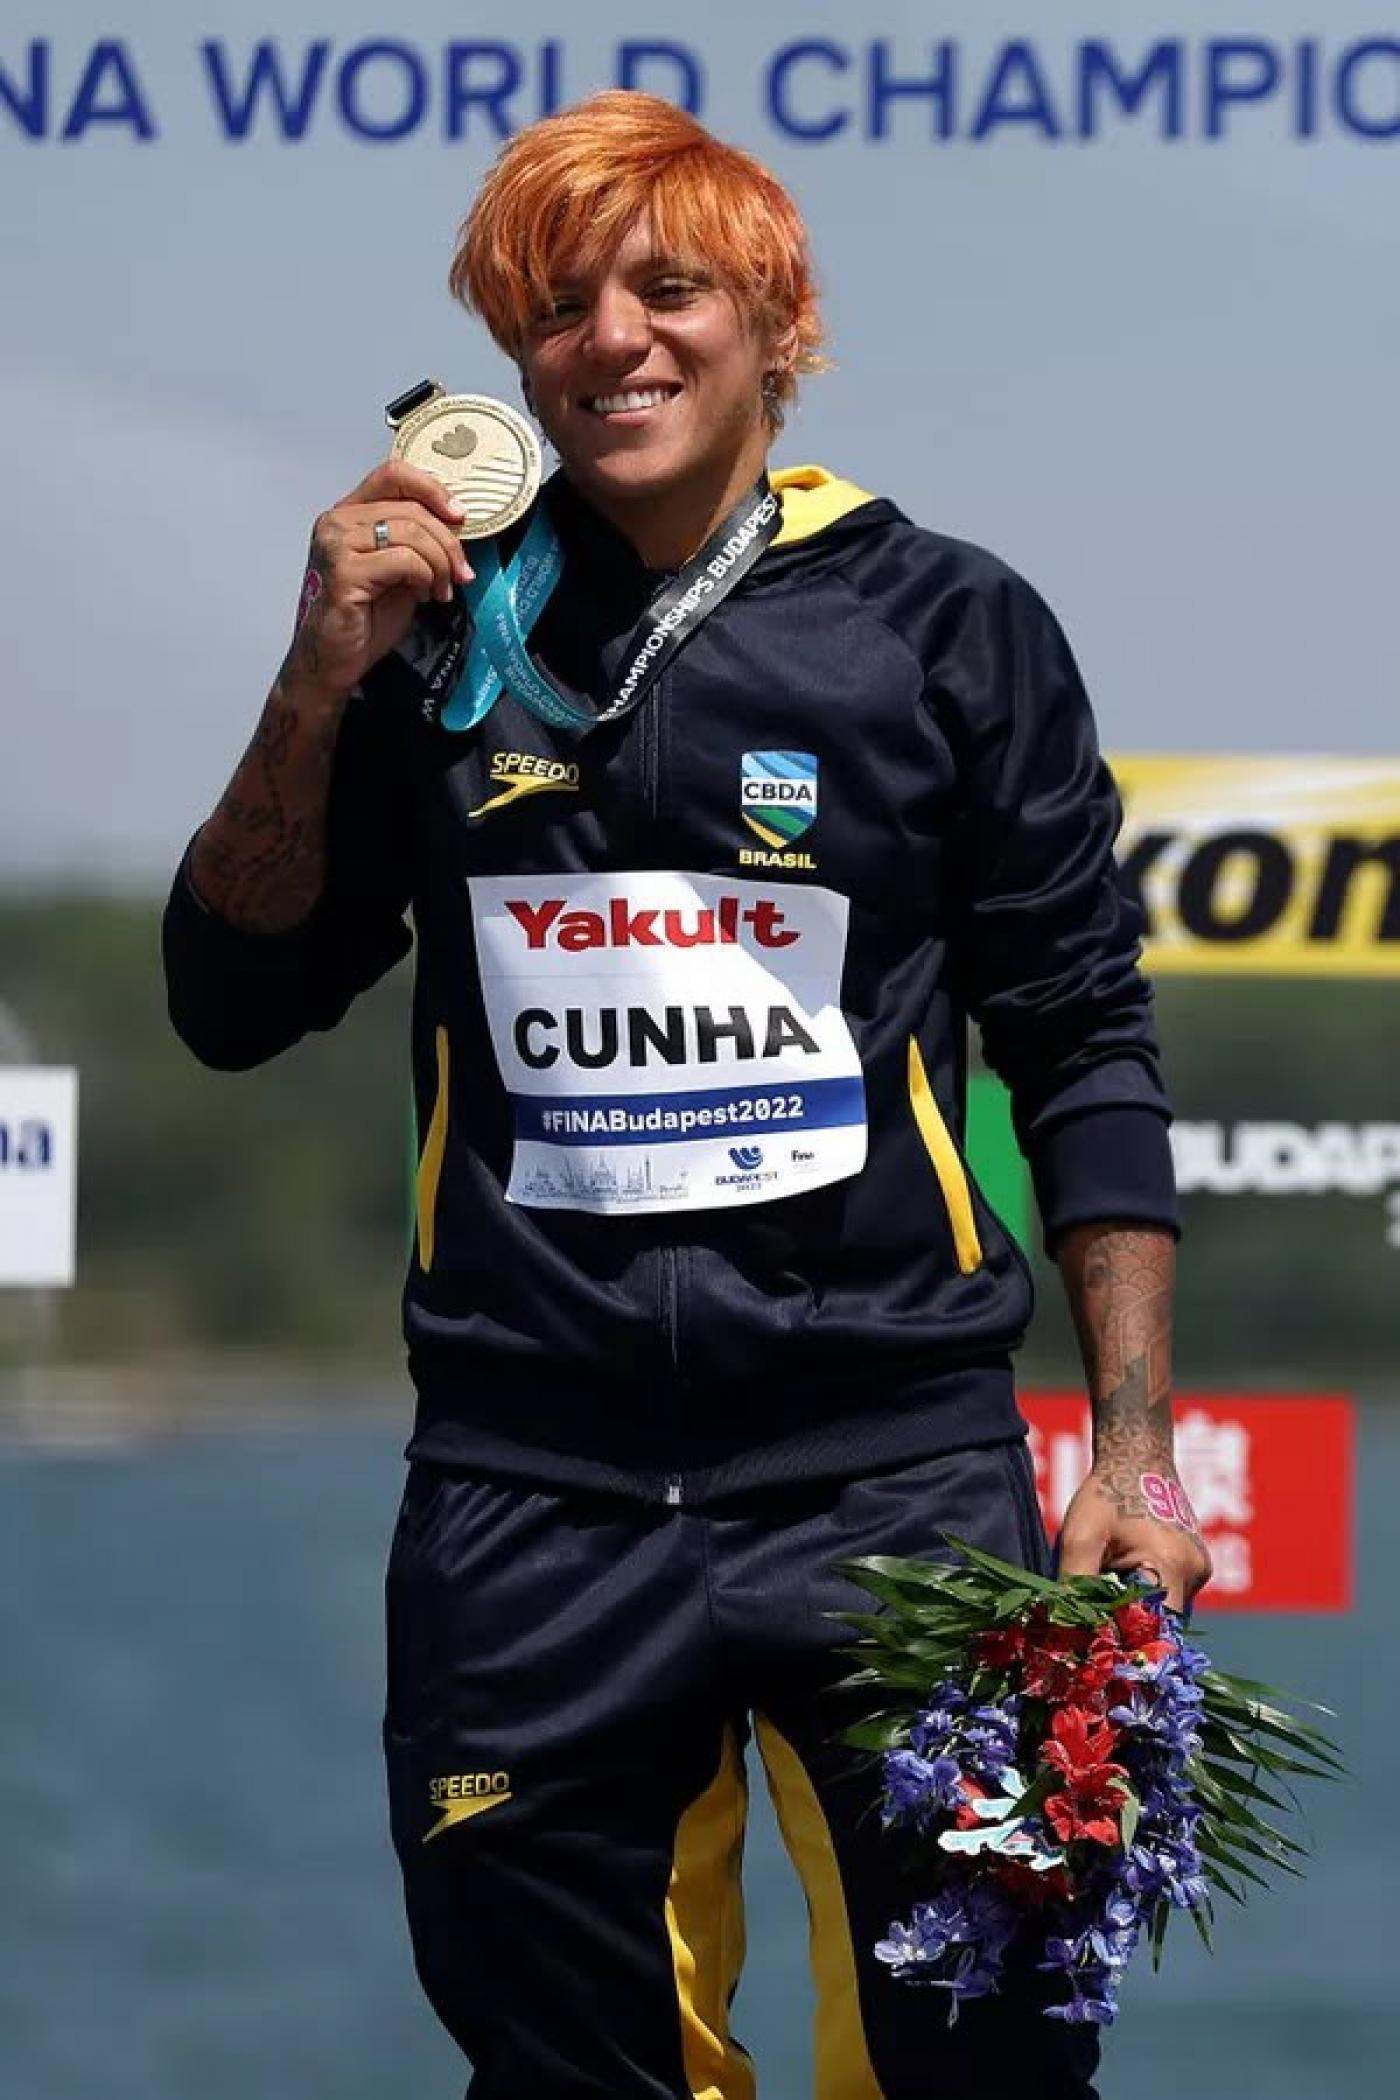 atleta segurando a medalha #paratodosverem